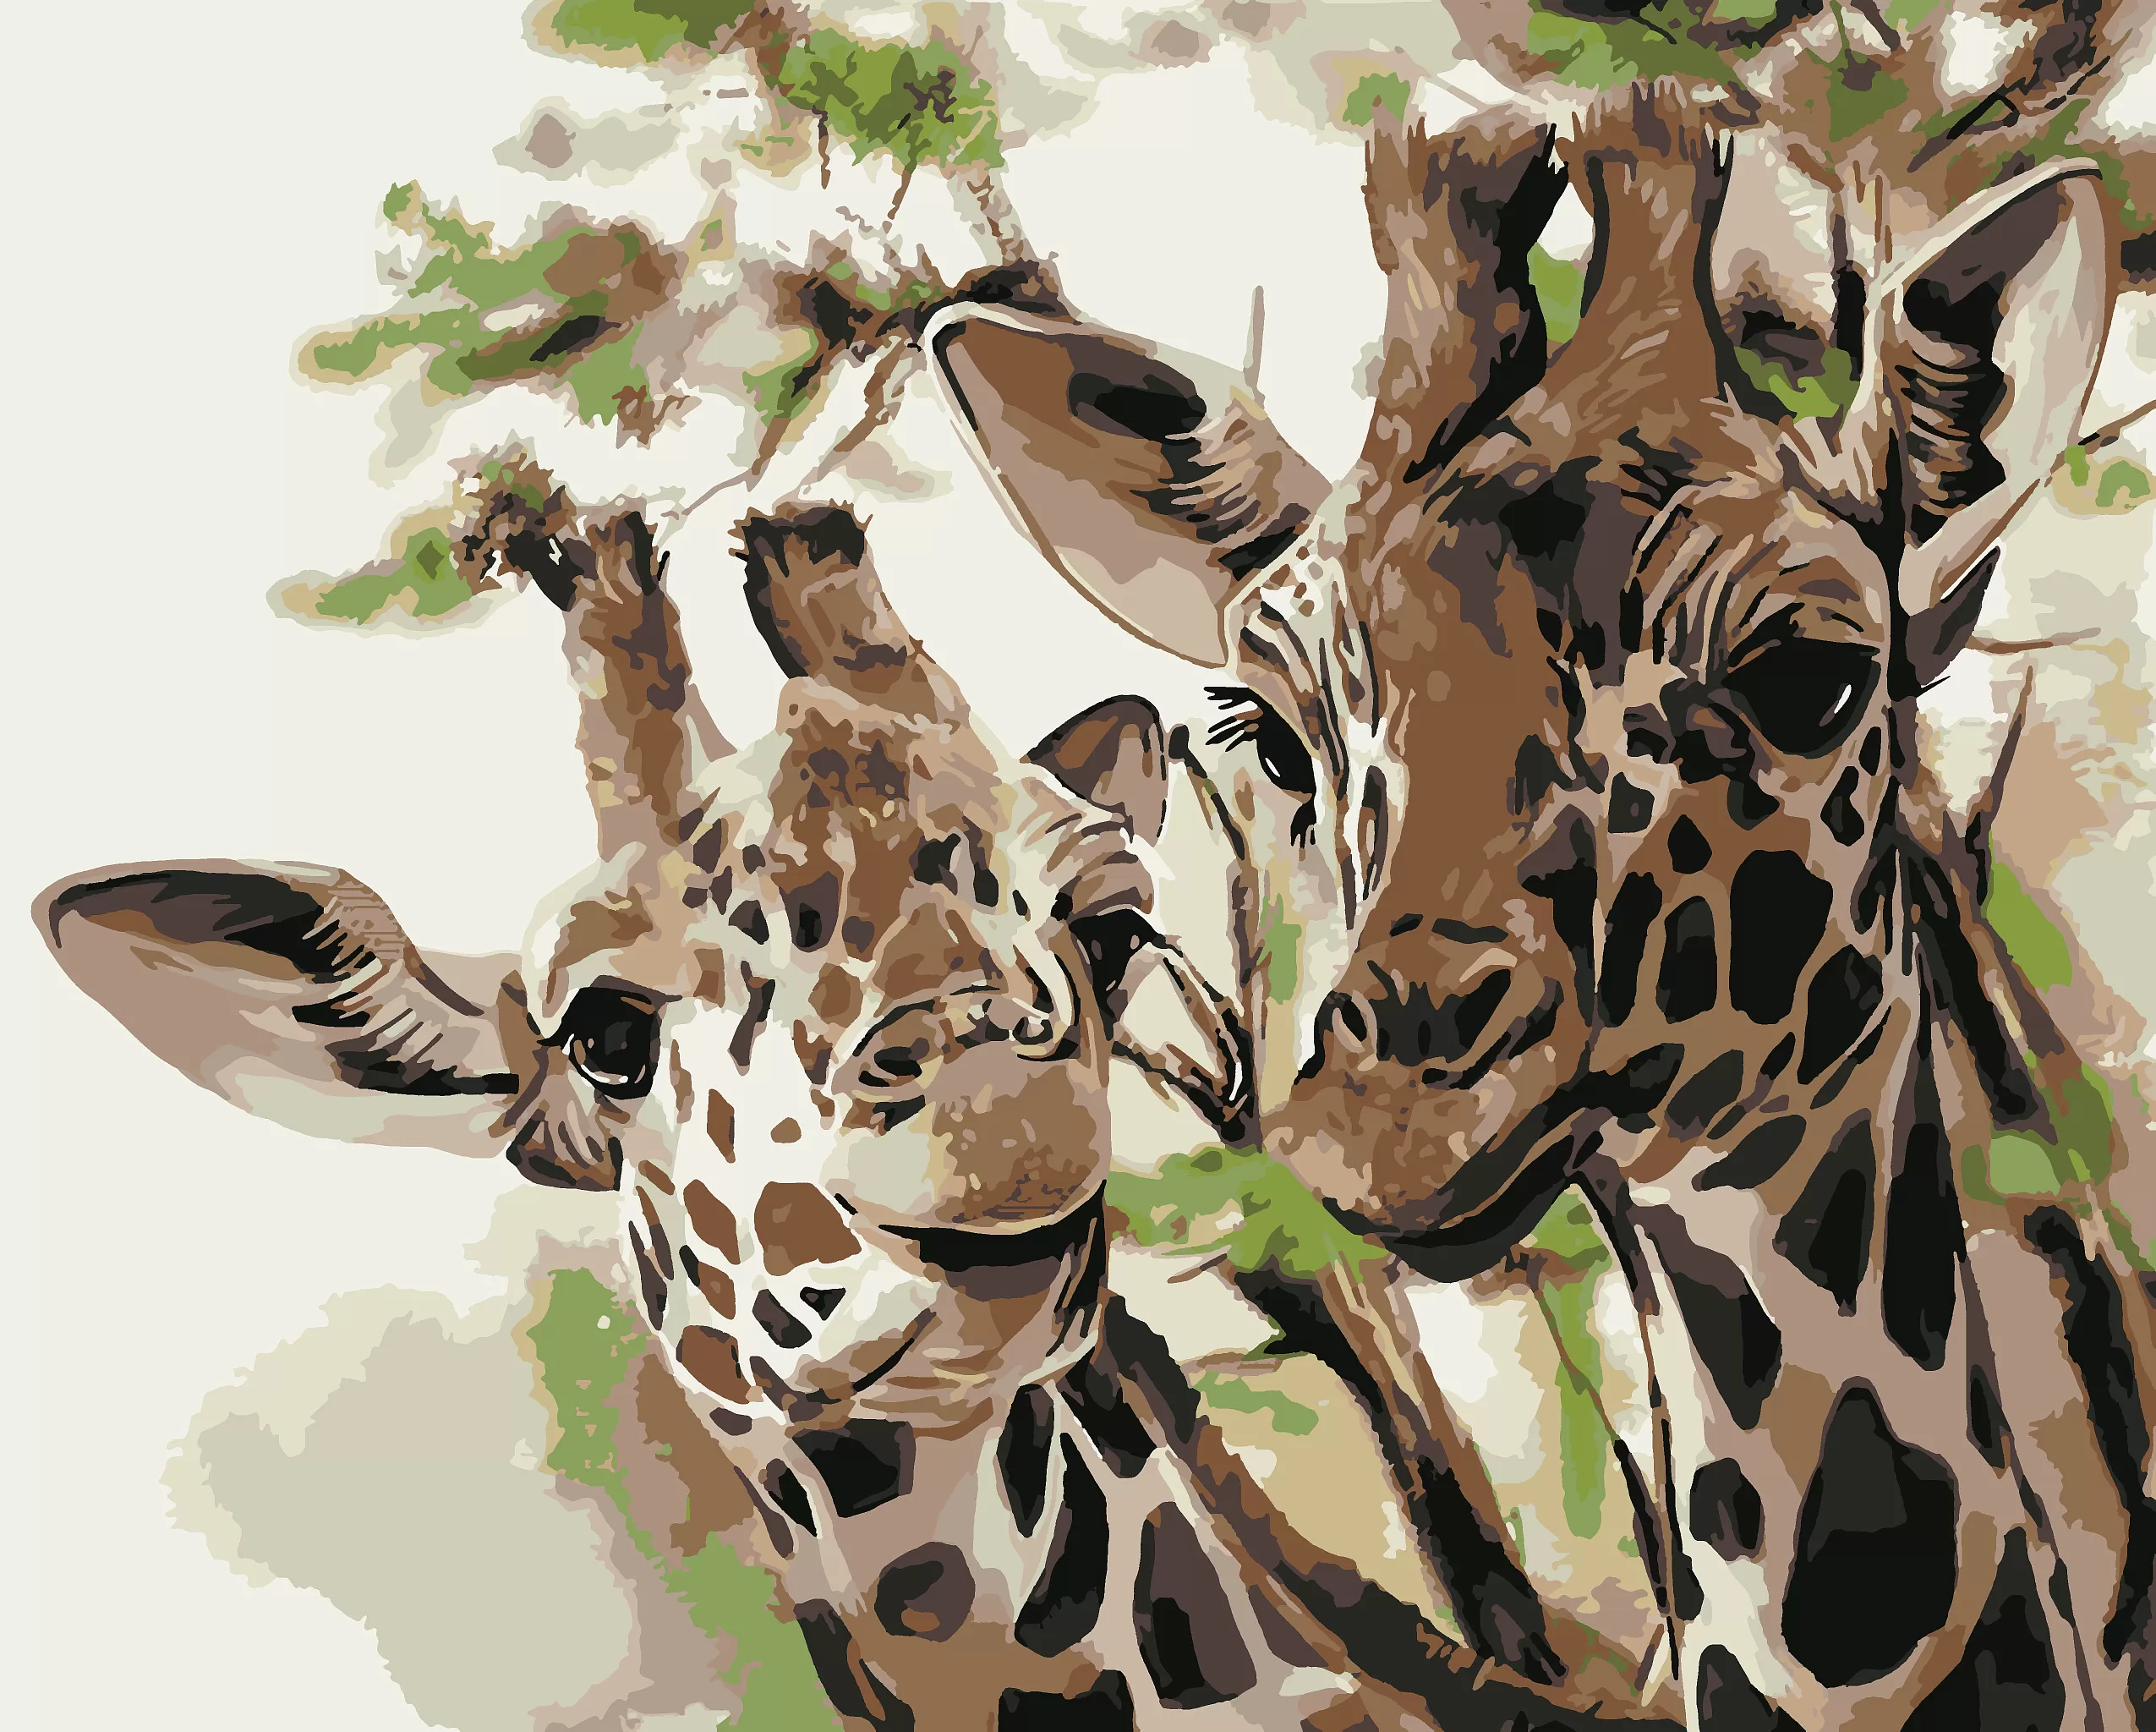 Картина по номерам Жирафы